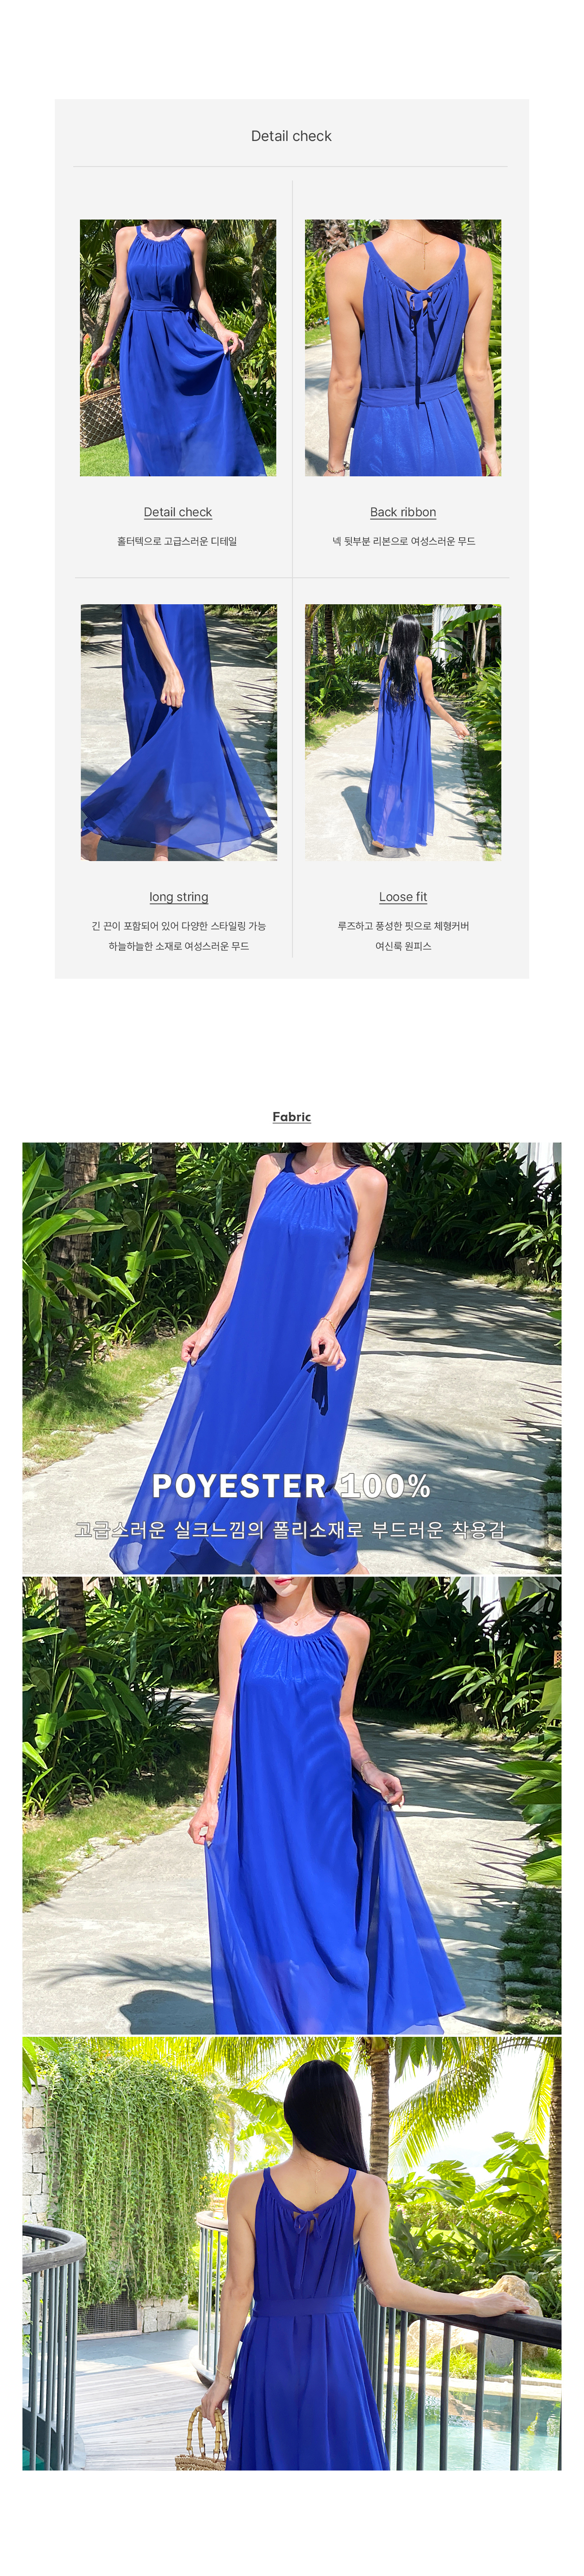 连衣裙 blue 彩色图像-S1L4